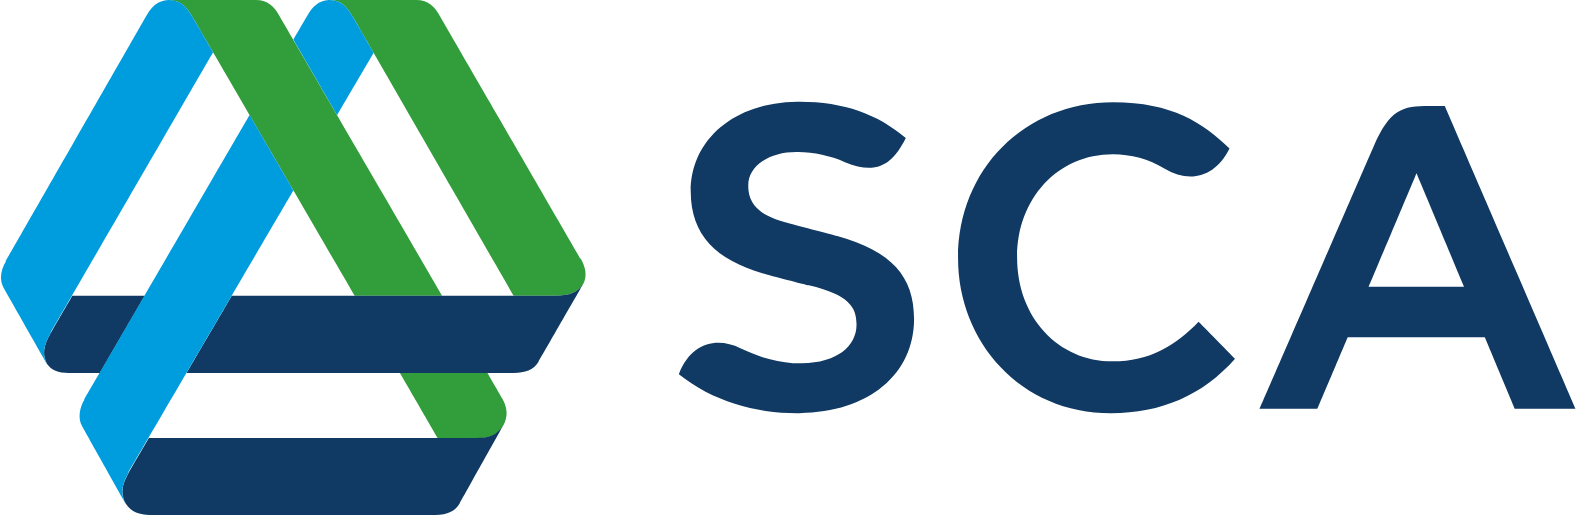 Svenska Cellulosa Aktiebolaget (SCA) logo large (transparent PNG)